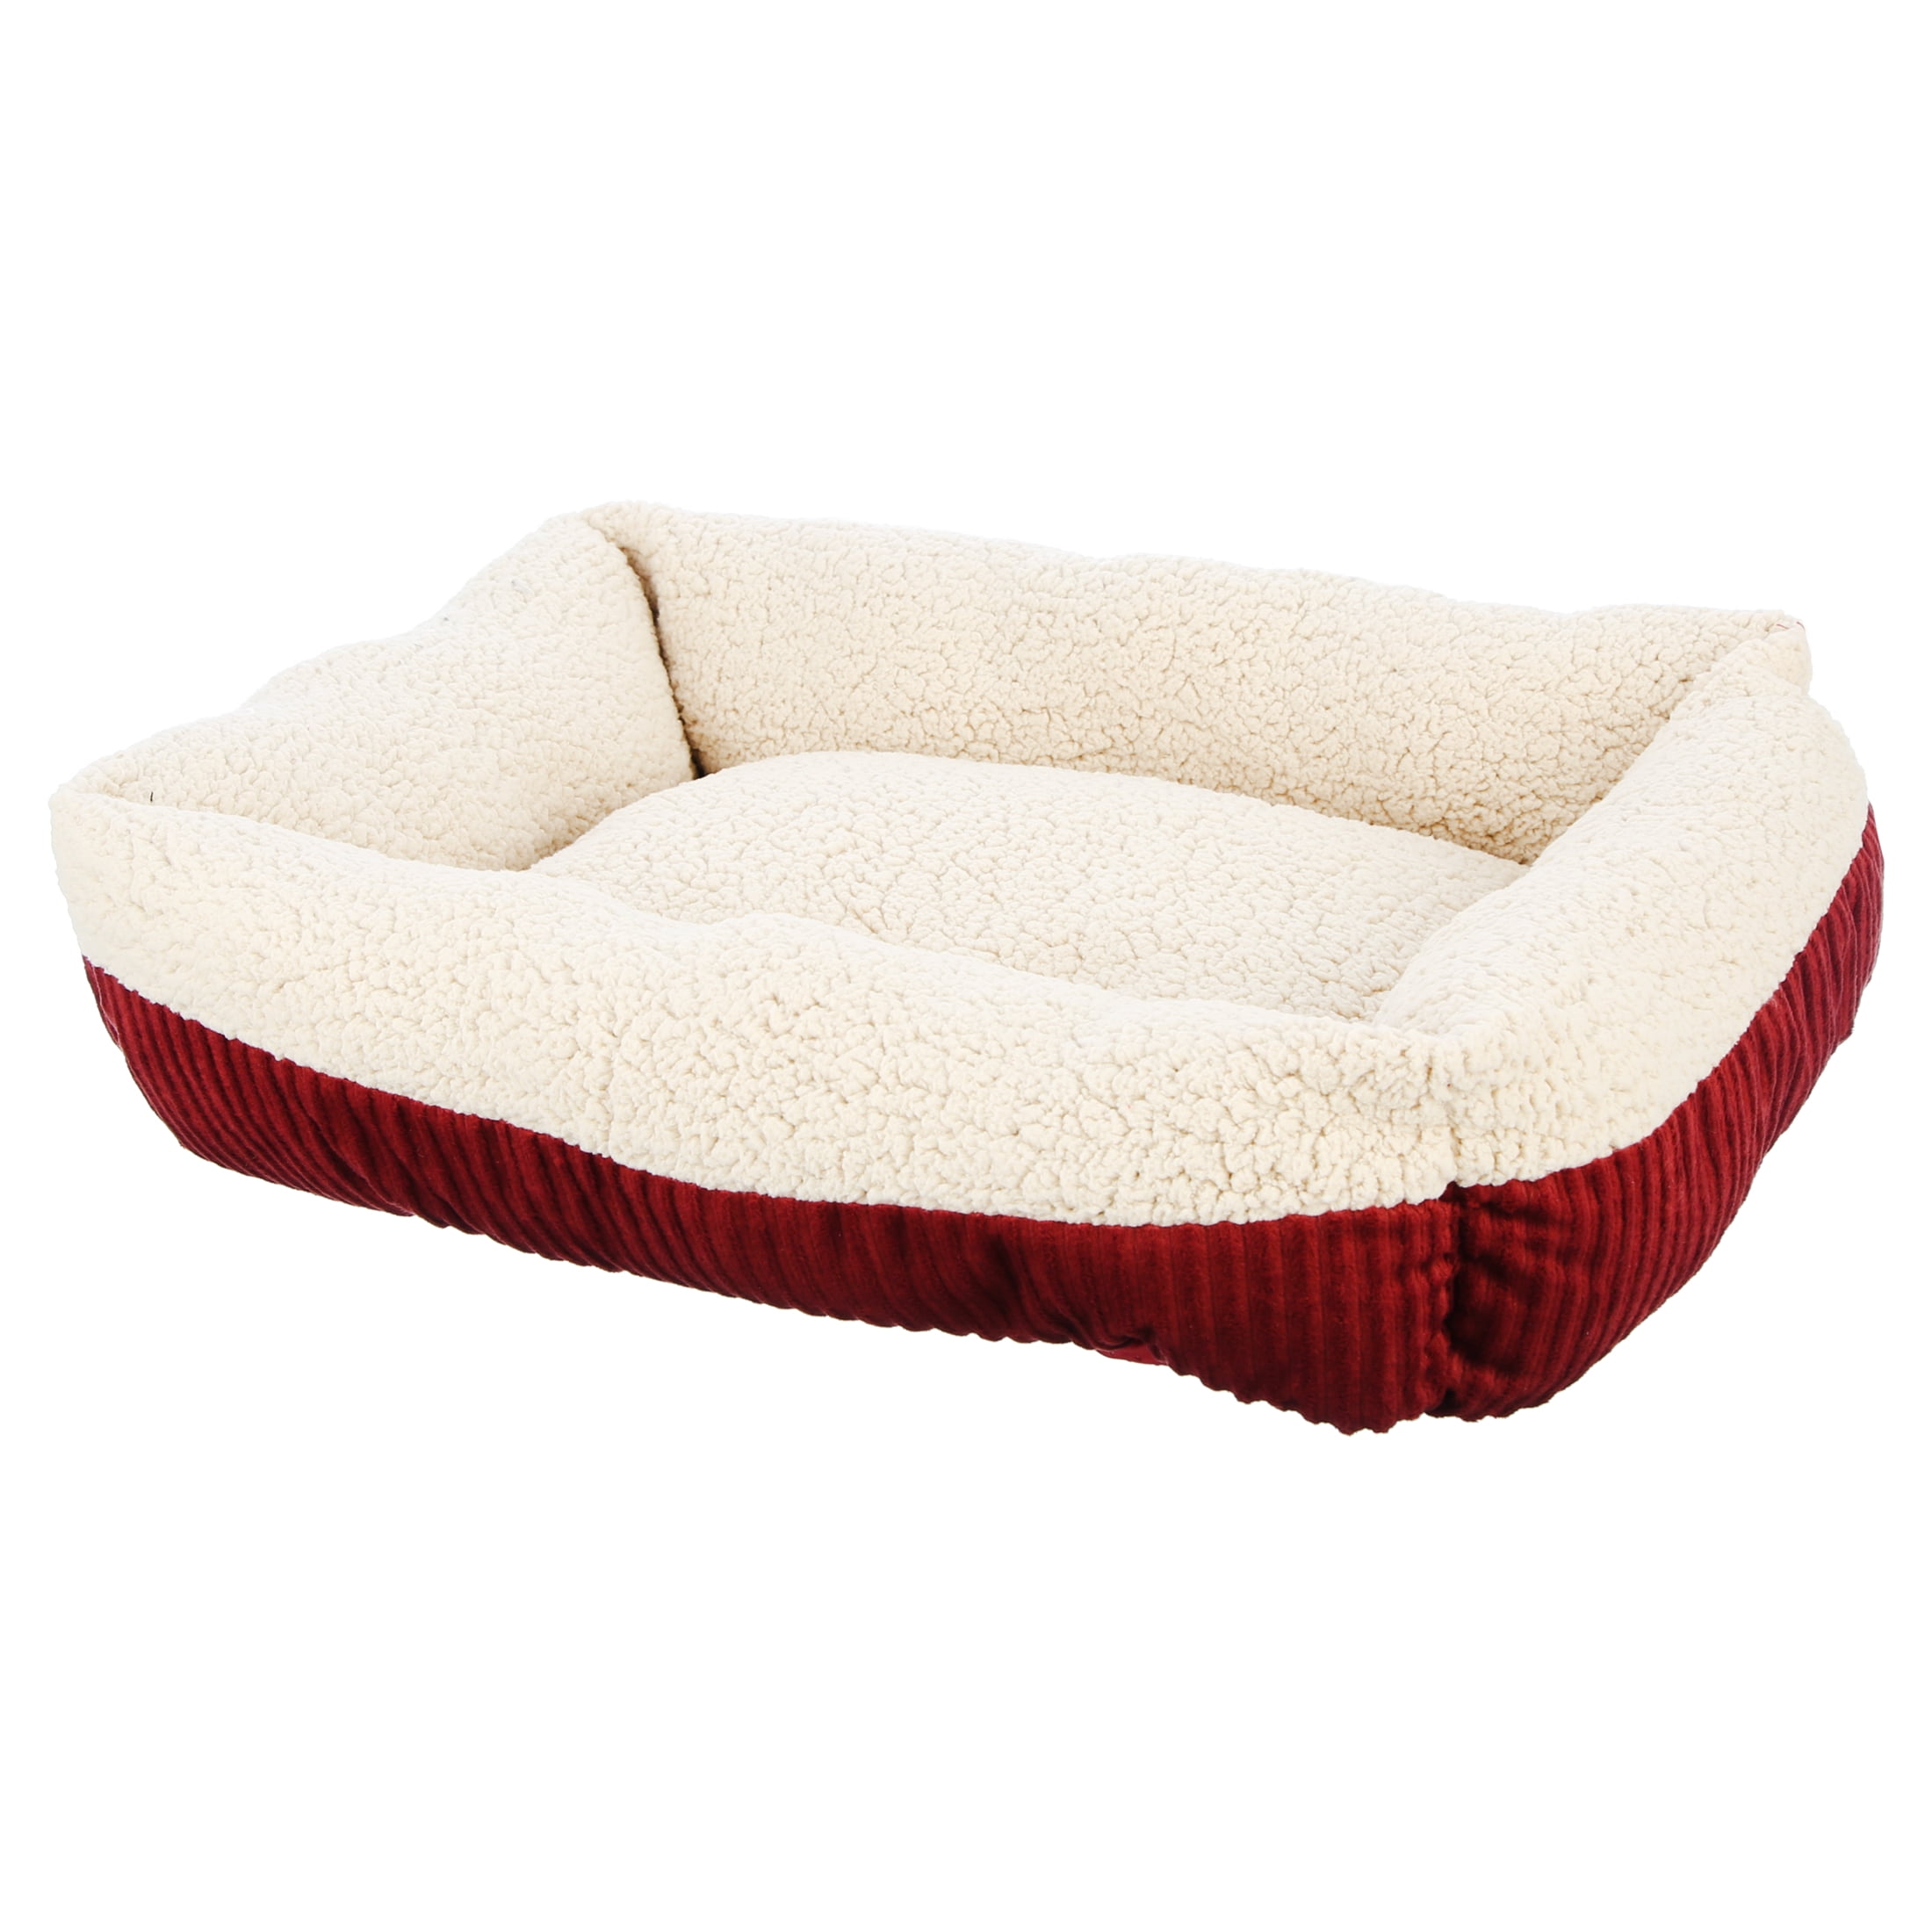 Aspen Pet Rectangular Pet Cat Bed, Red - Walmart.com